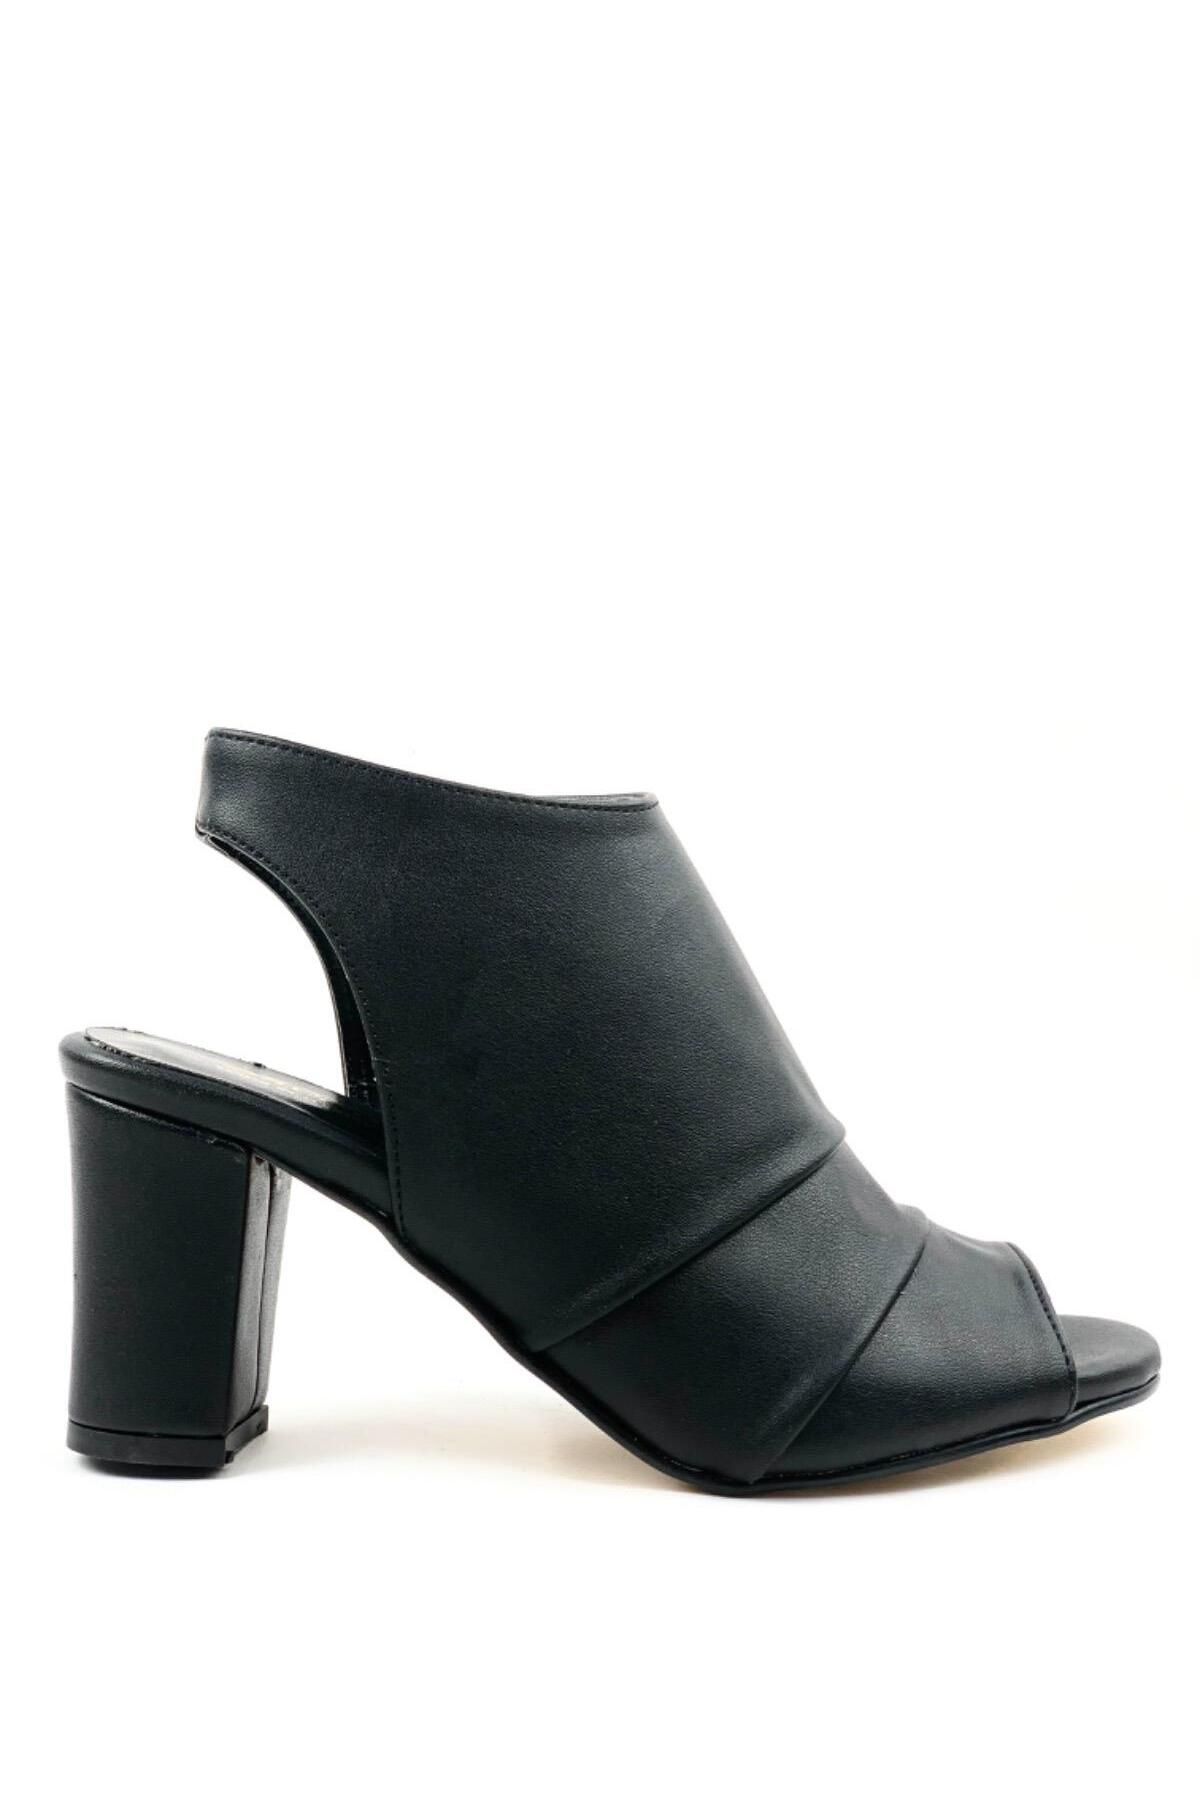 bescobel Kadın Konla Siyah Günlük Topuklu Ayakkabı